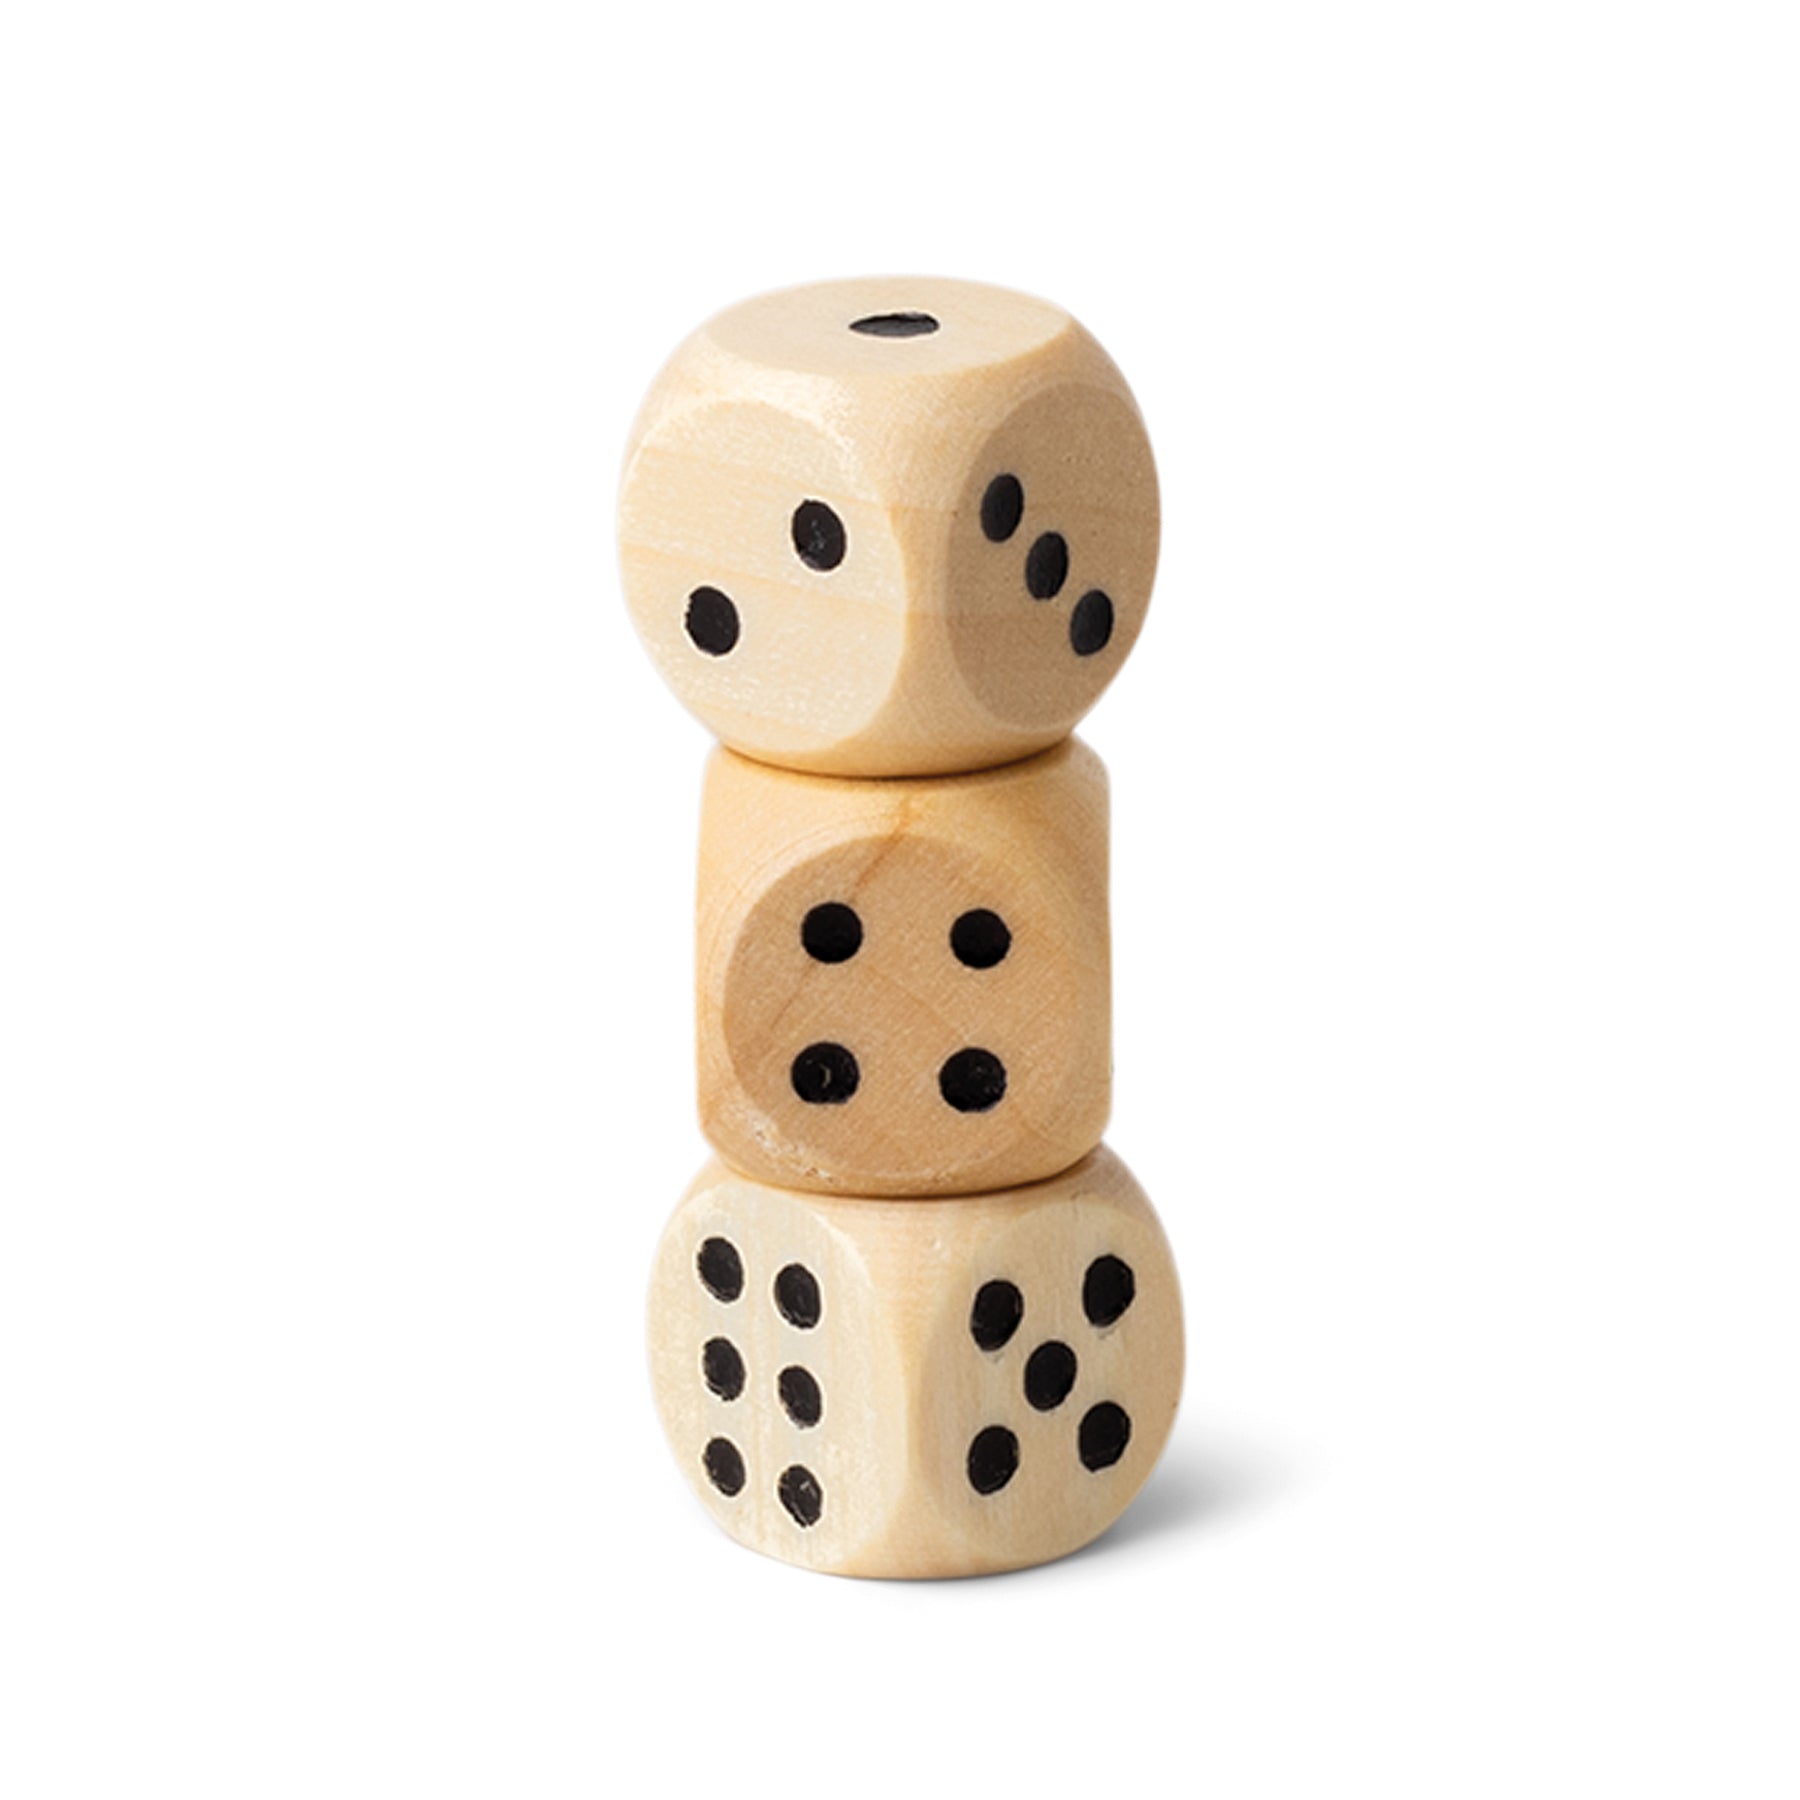 Herring & Bones - Concept Store Joyeux - Designworks Ink - Jeux de société - Jeu de Dames / Backgammon